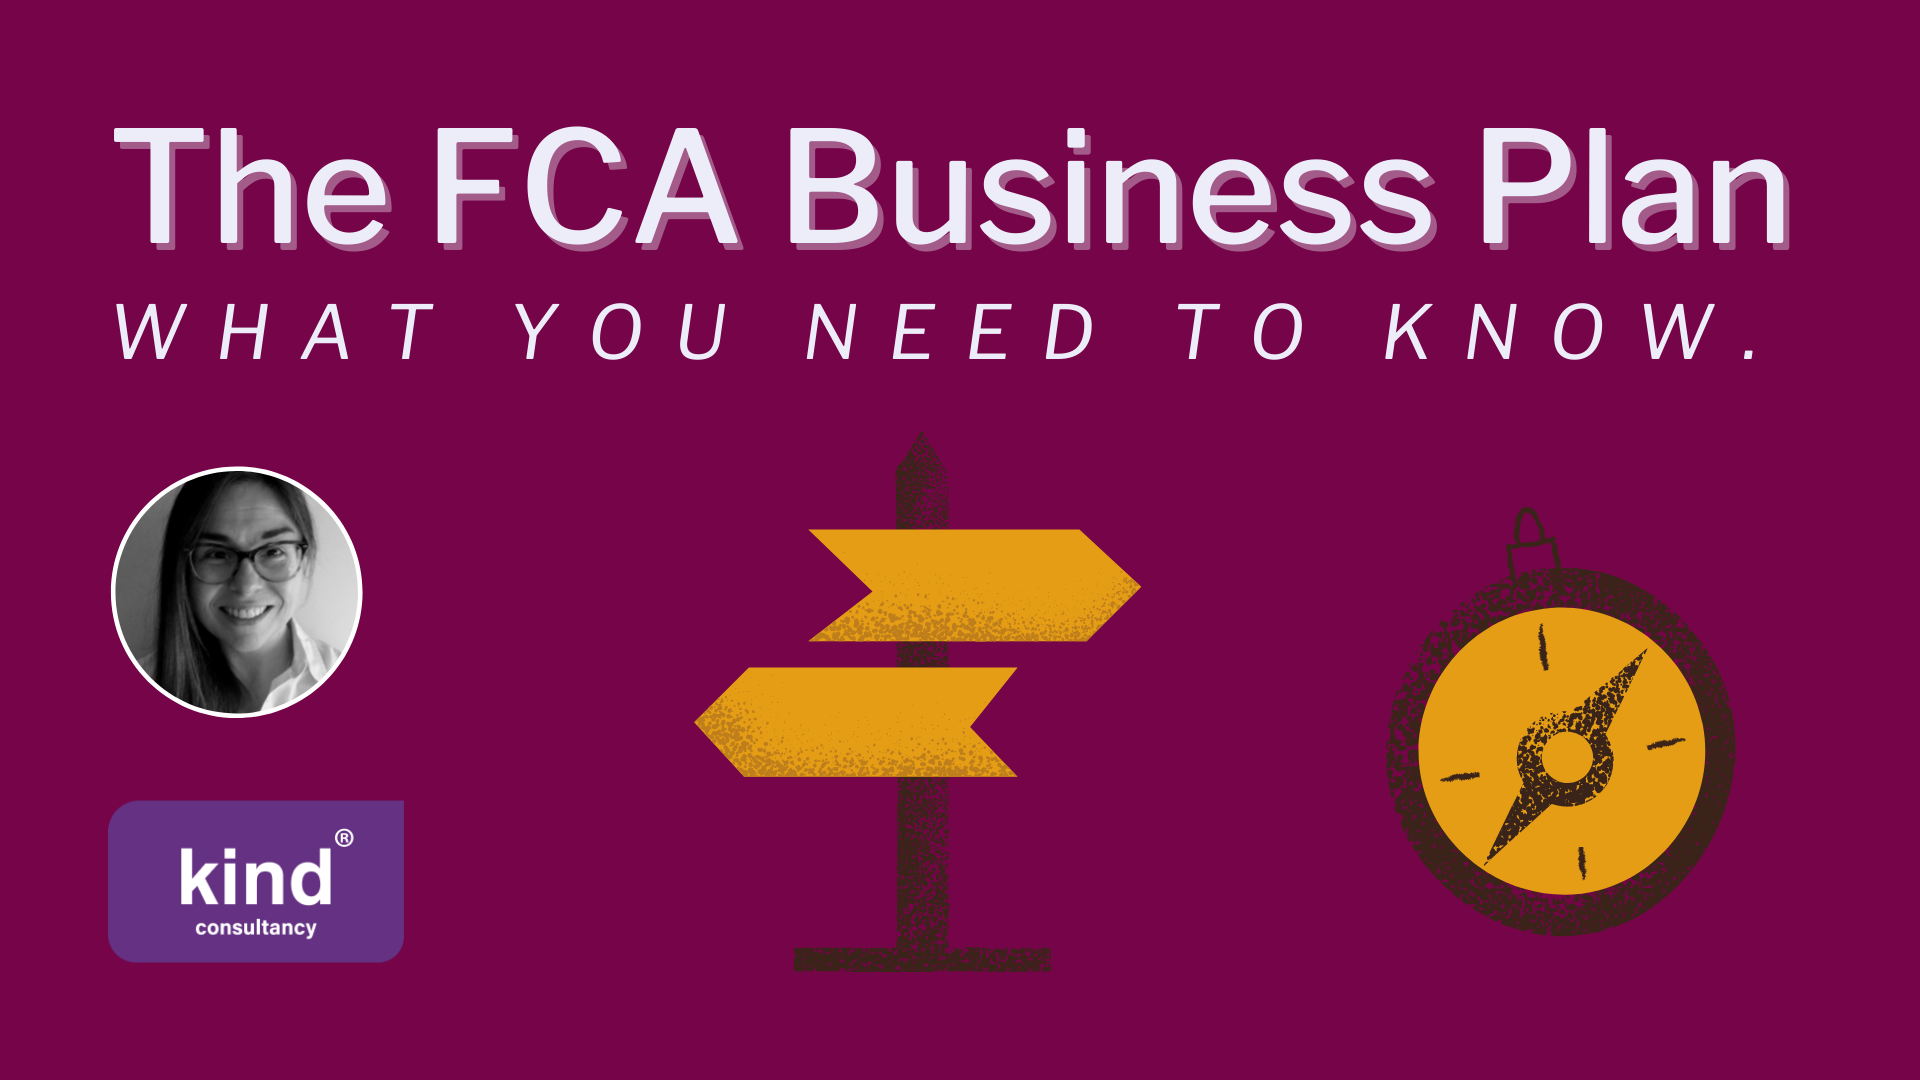 fca business plan guidance